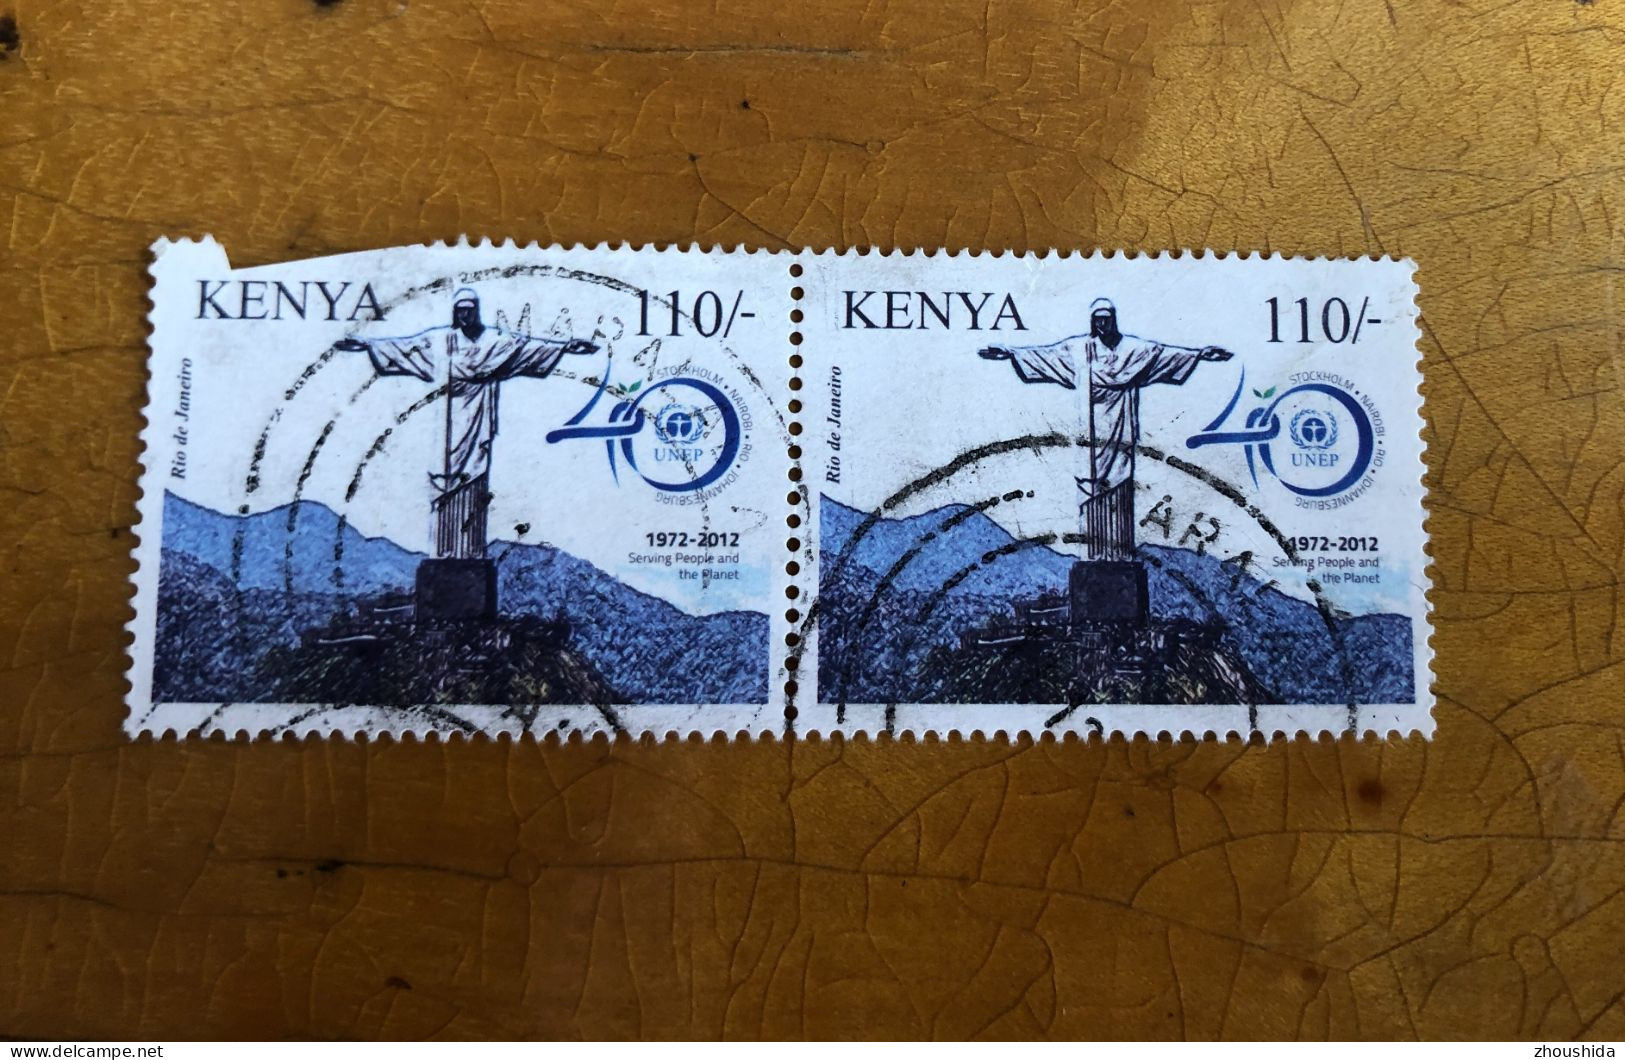 Kenya 2012 UNEP 110SH Pair (top Value)fine Used - Kenya (1963-...)